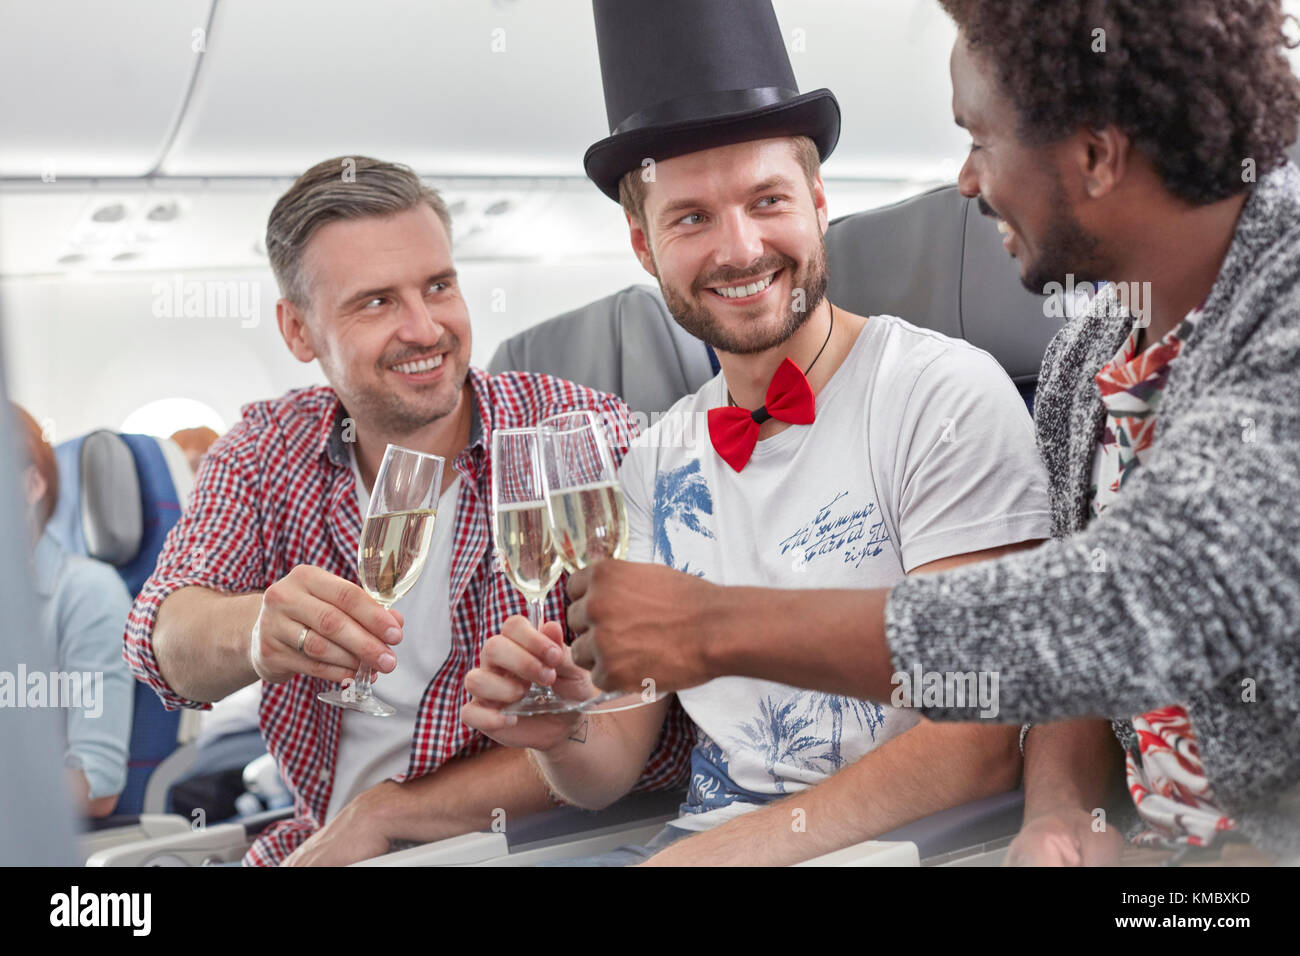 Jeunes amis de sexe masculin toaster des verres à champagne dans l'avion Banque D'Images